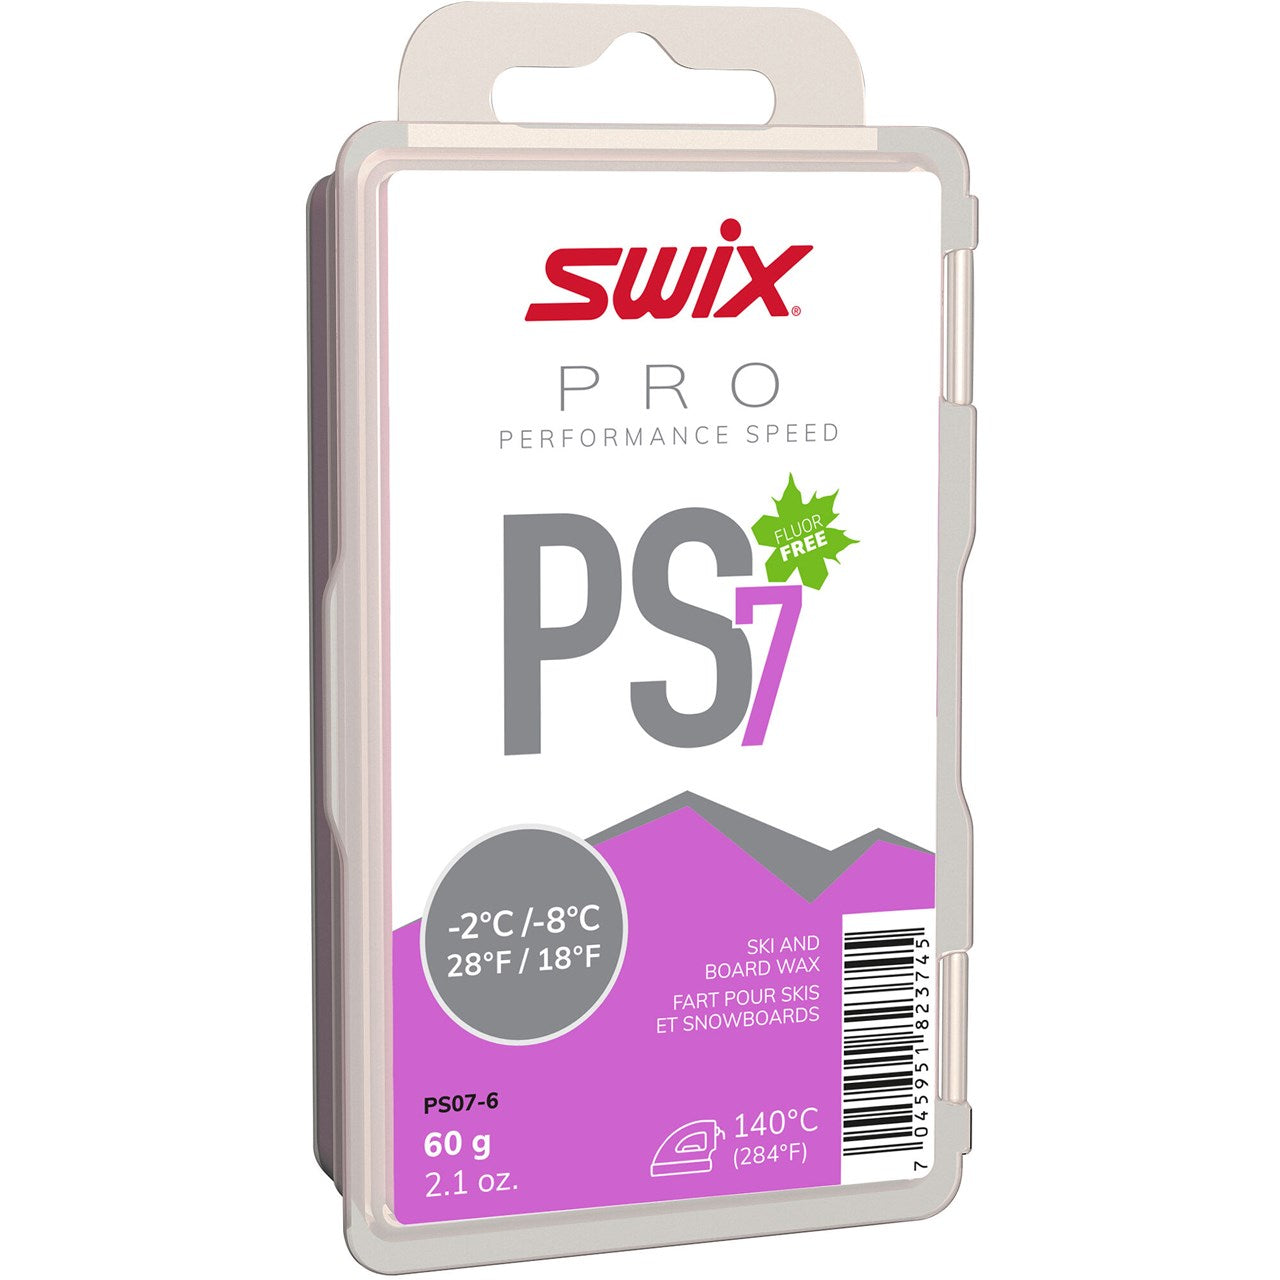 Swix PS7 Violet 60g - Performance Speed SKI & SNOWBOARD WAX Swix   